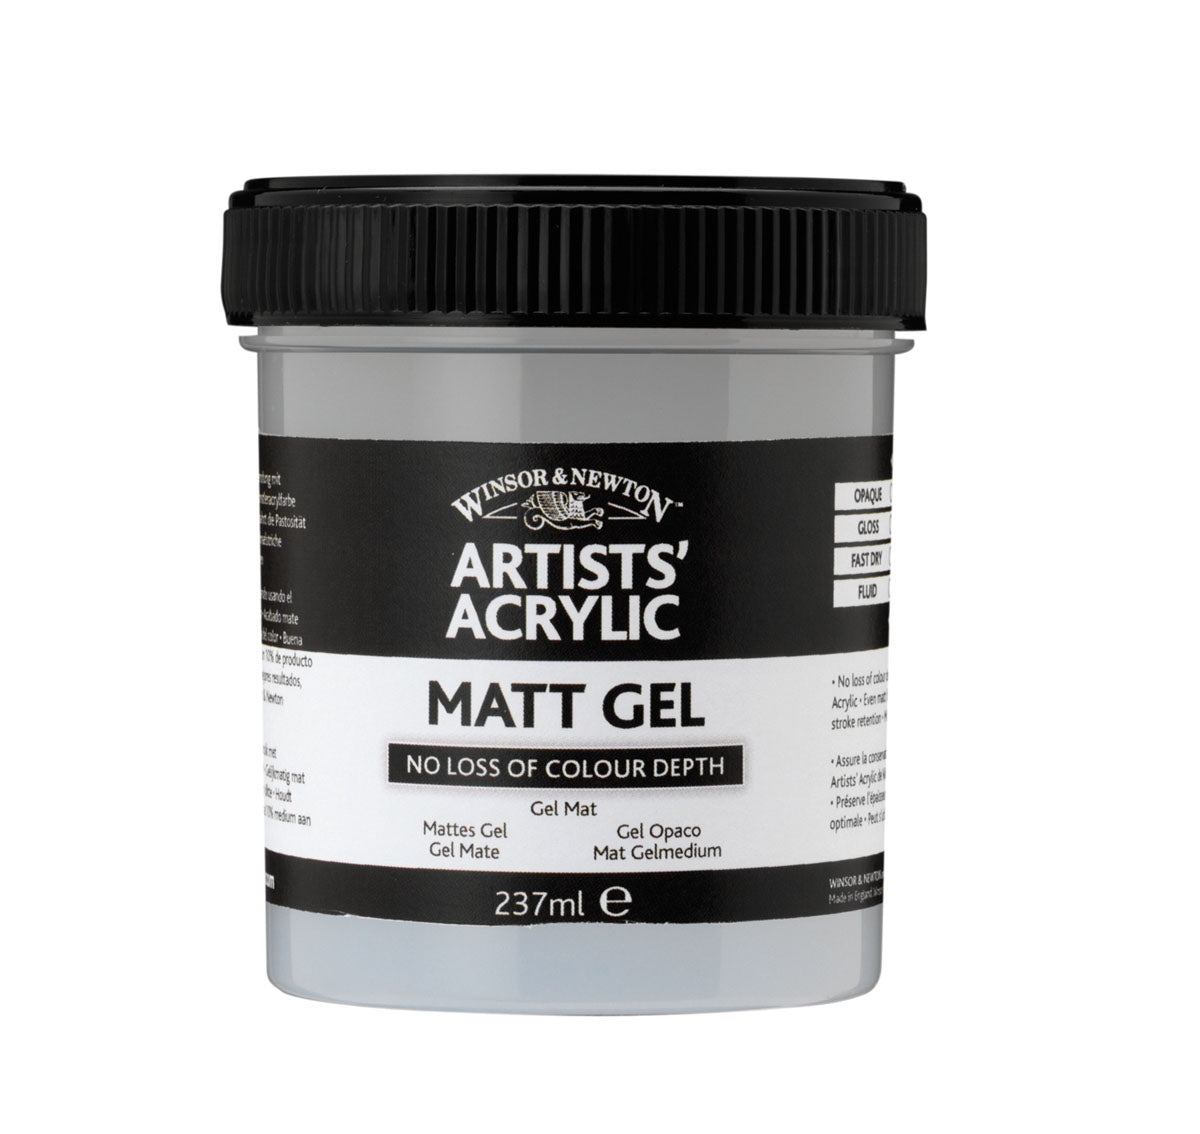 W & N Artists' Acrylic Matt Gel 237ml - theartshop.com.au